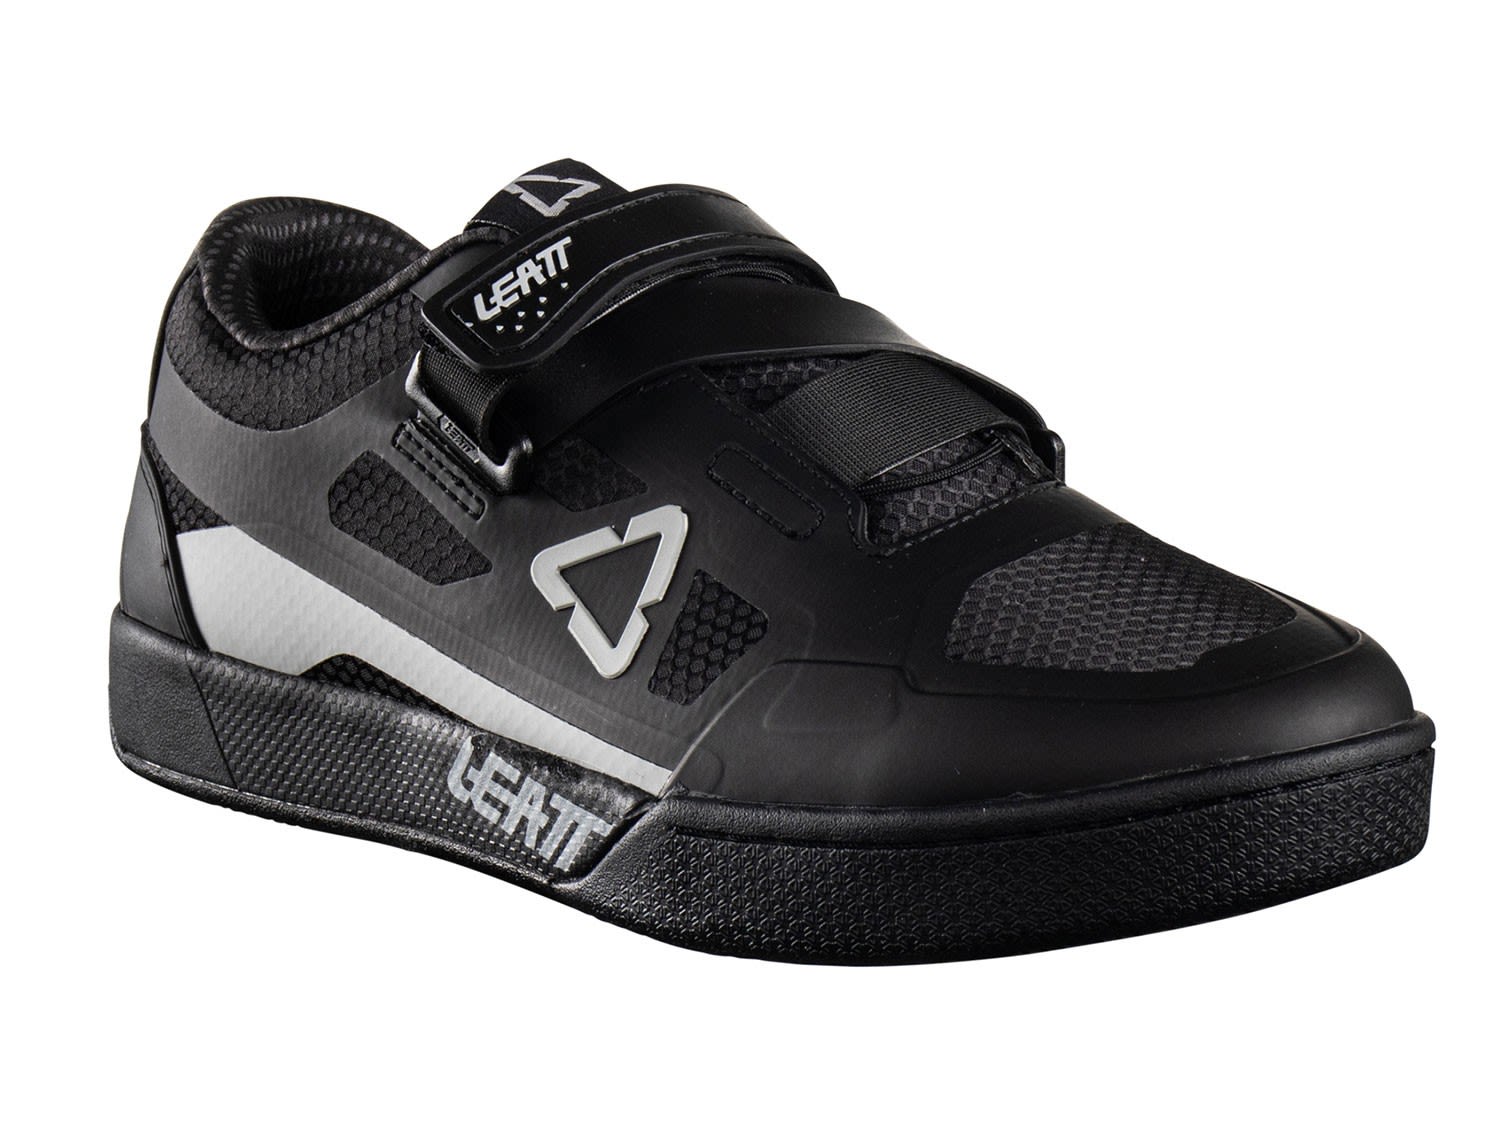 Leatt 5-0 Klickpedal Shoe Schwarz- Freeride- Grsse EU 38-5 - Farbe Black